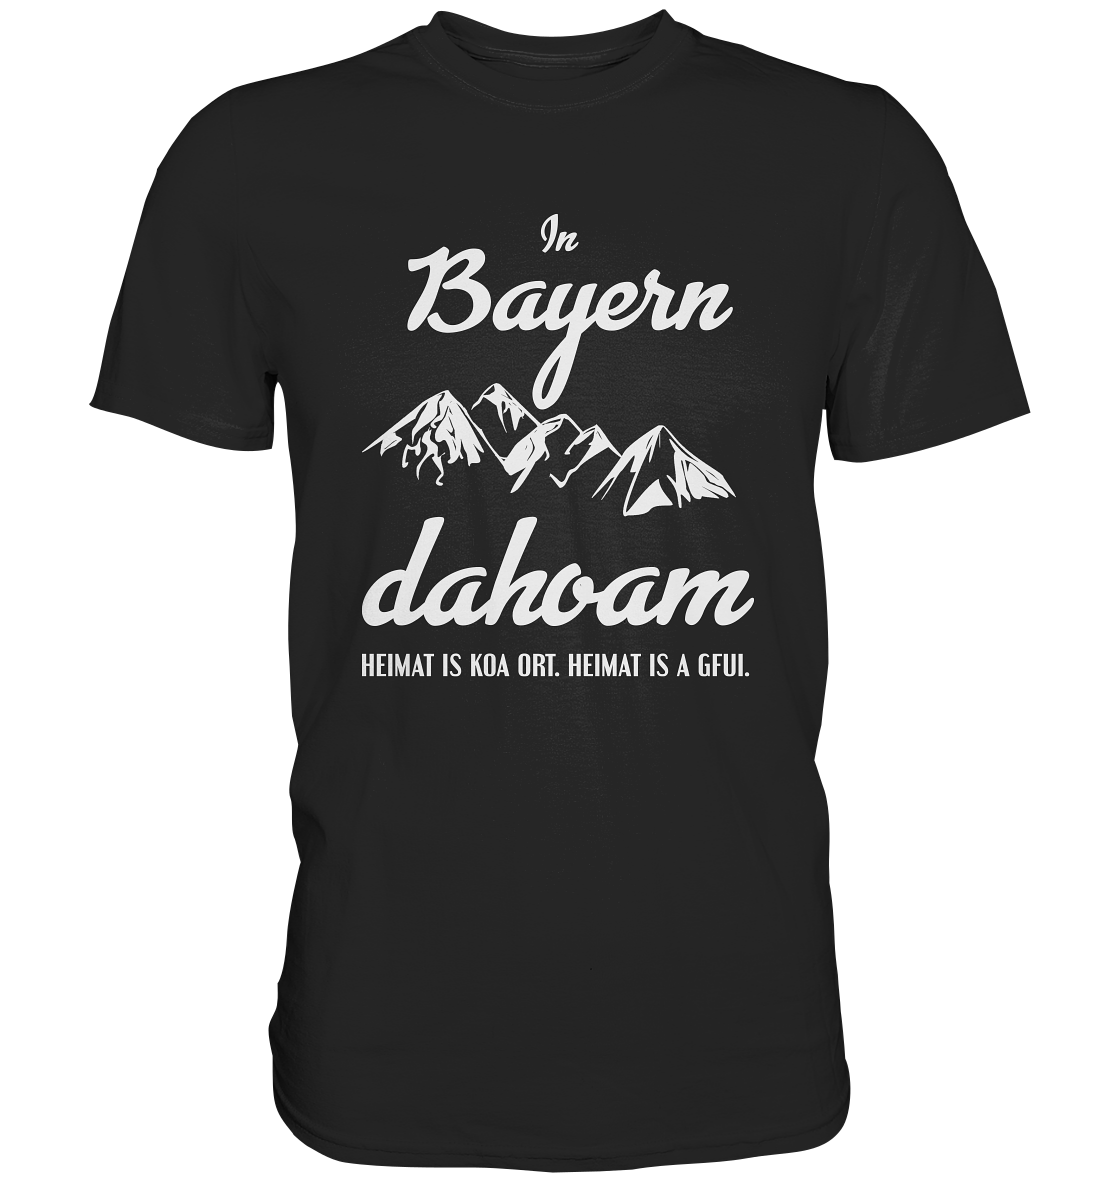 In Bayern dahoam. Heimat bayrisch - Unisex Premium Shirt